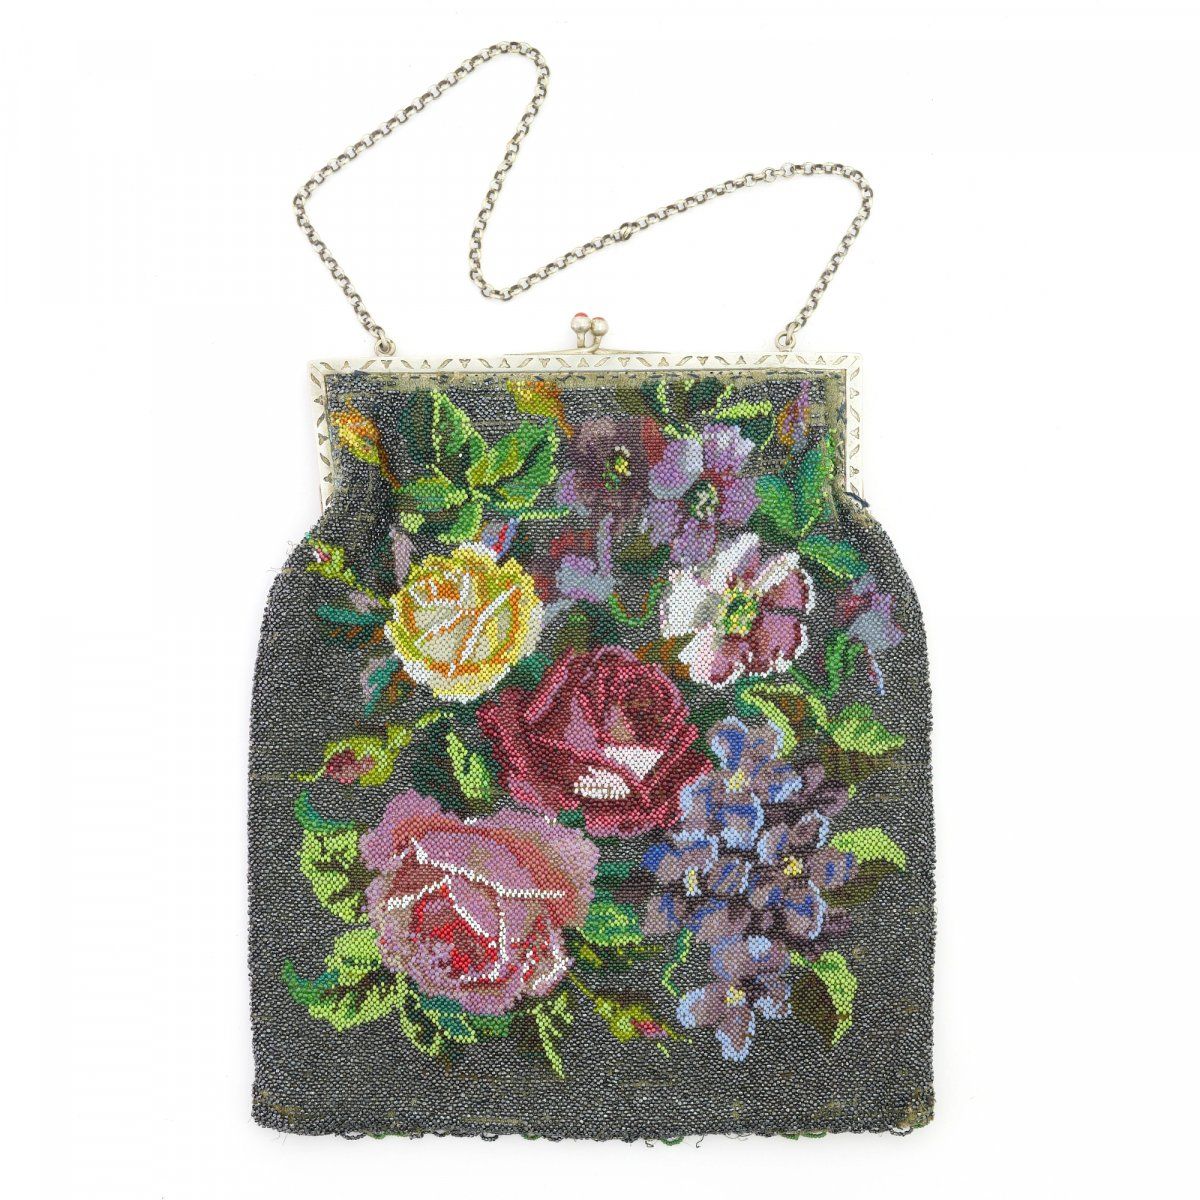 Null 花卉图案的袋子，19世纪下半叶，高25 x 21厘米。纺织品上的多色珠子刺绣，丝绸衬里，金属钉，金属链，宝石。